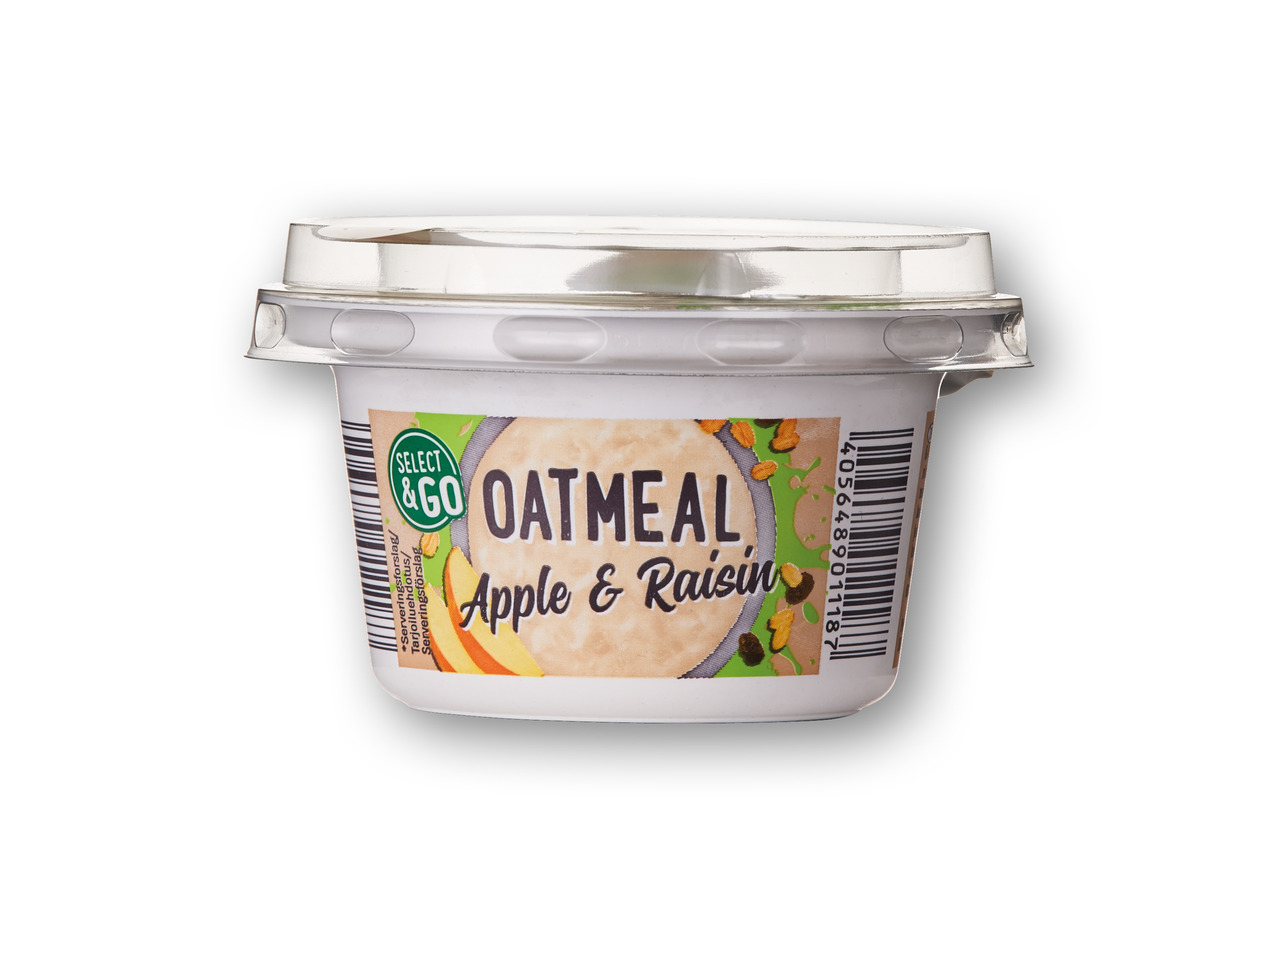 SELECT&GO Skyr-oatmeal